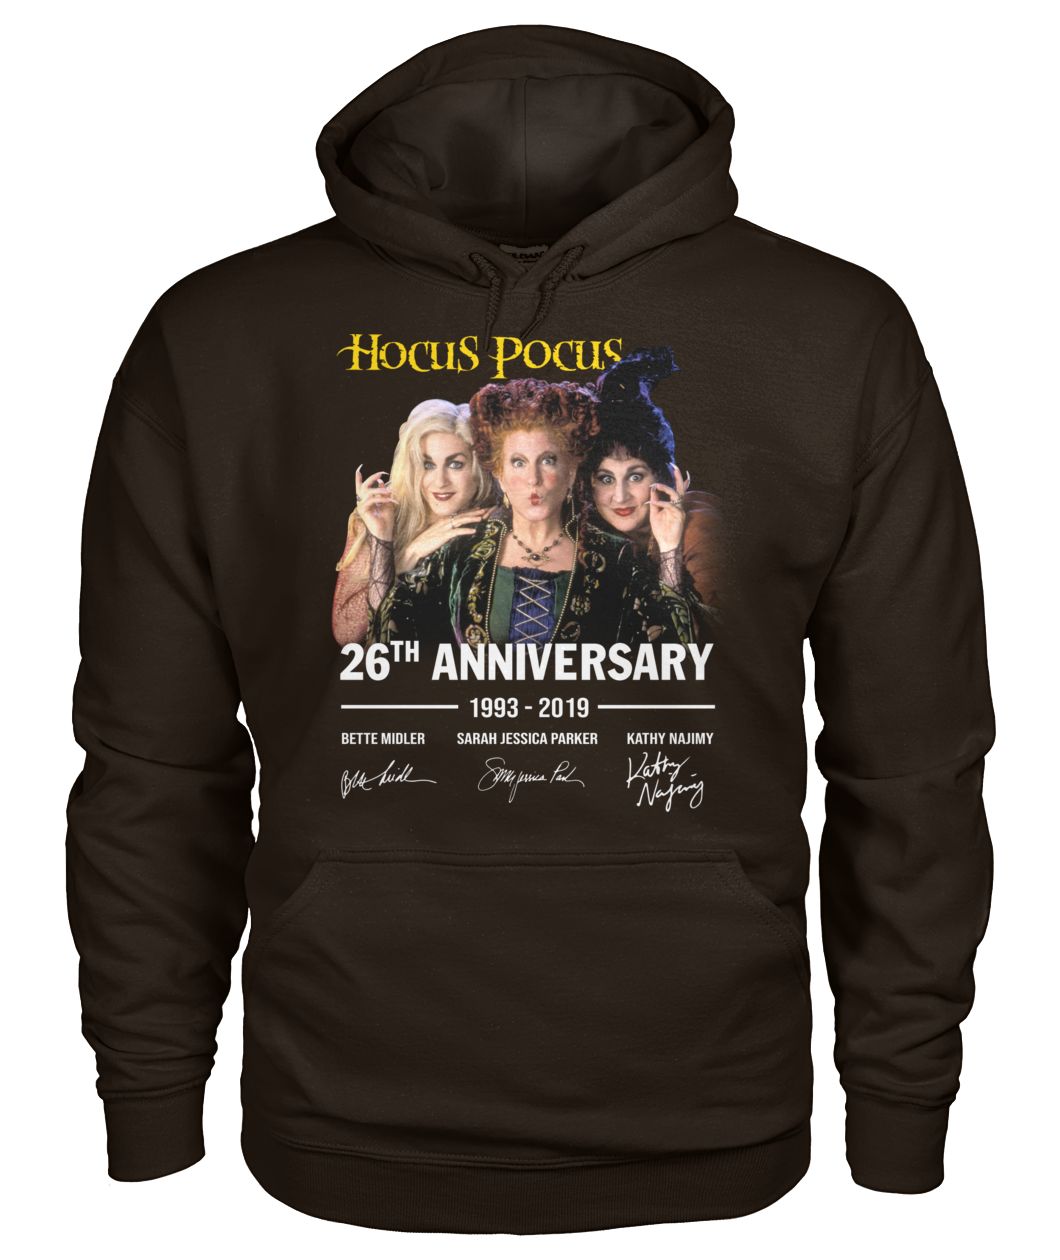 Hocus pocus 26th anniversary 1993 2019 signature gildan hoodie